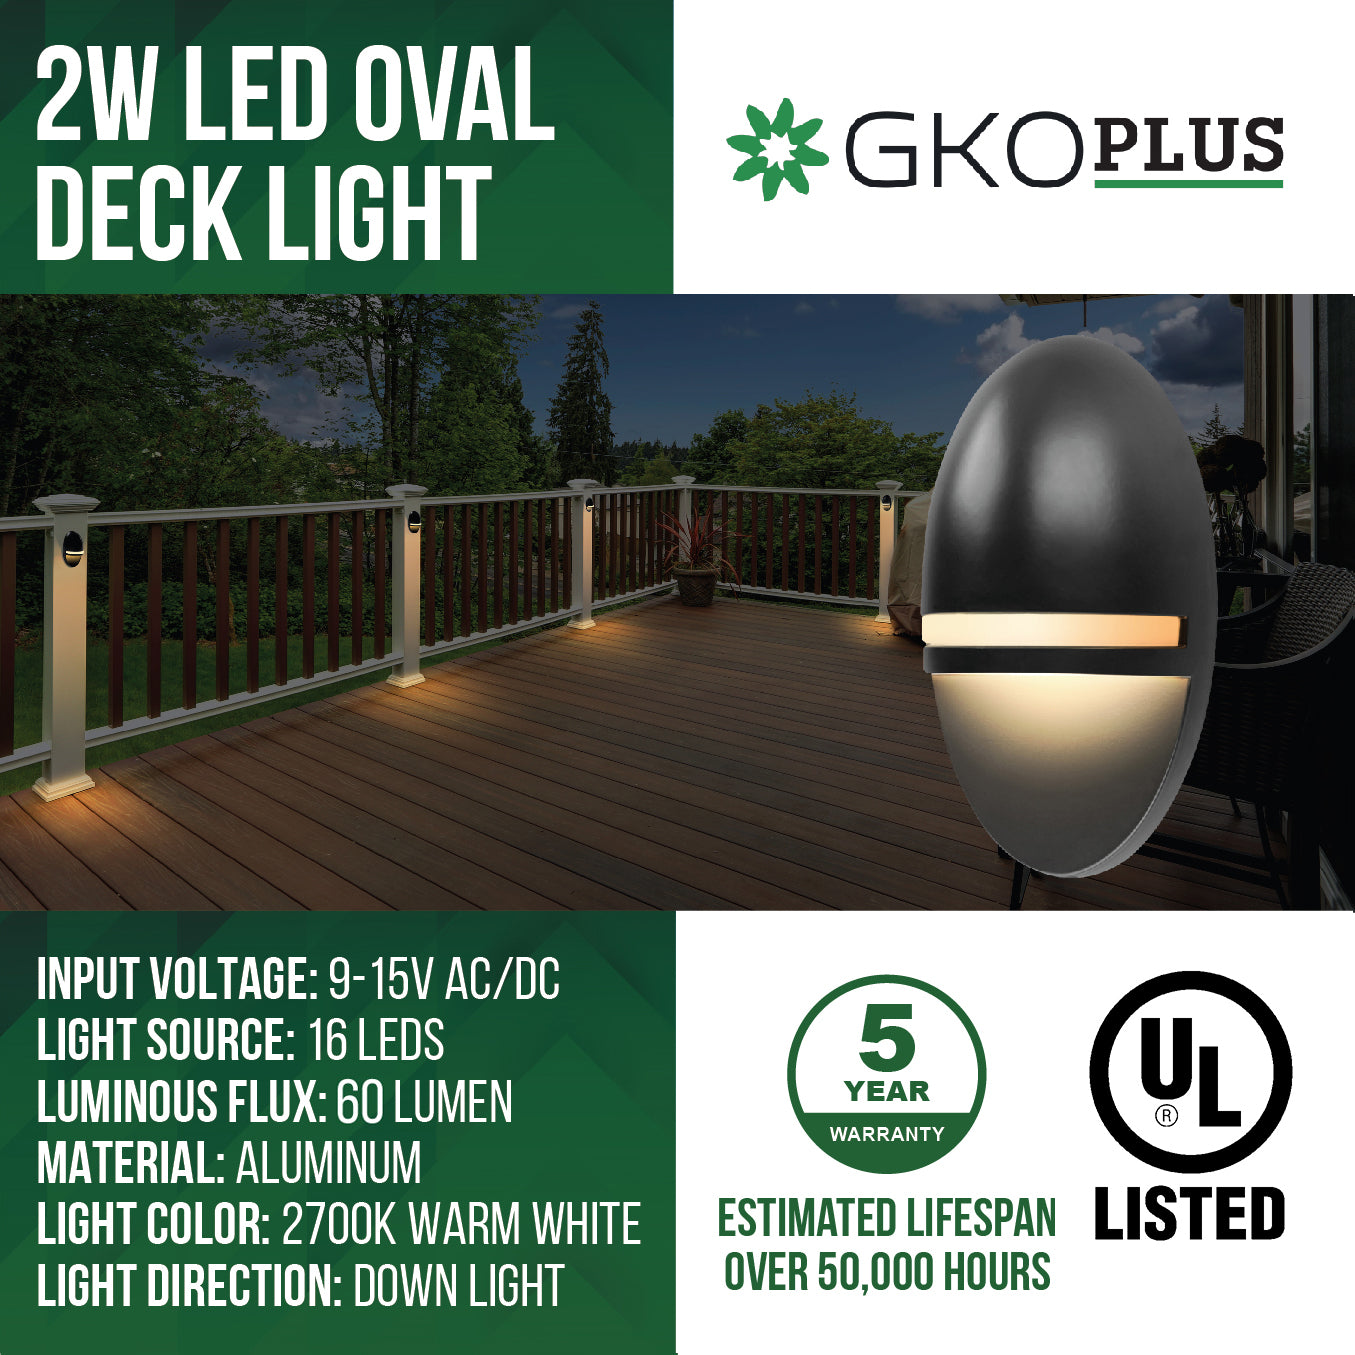 Low Voltage Vertical Oval Step Light, 9-15V AC/DC, 2W, 2700K